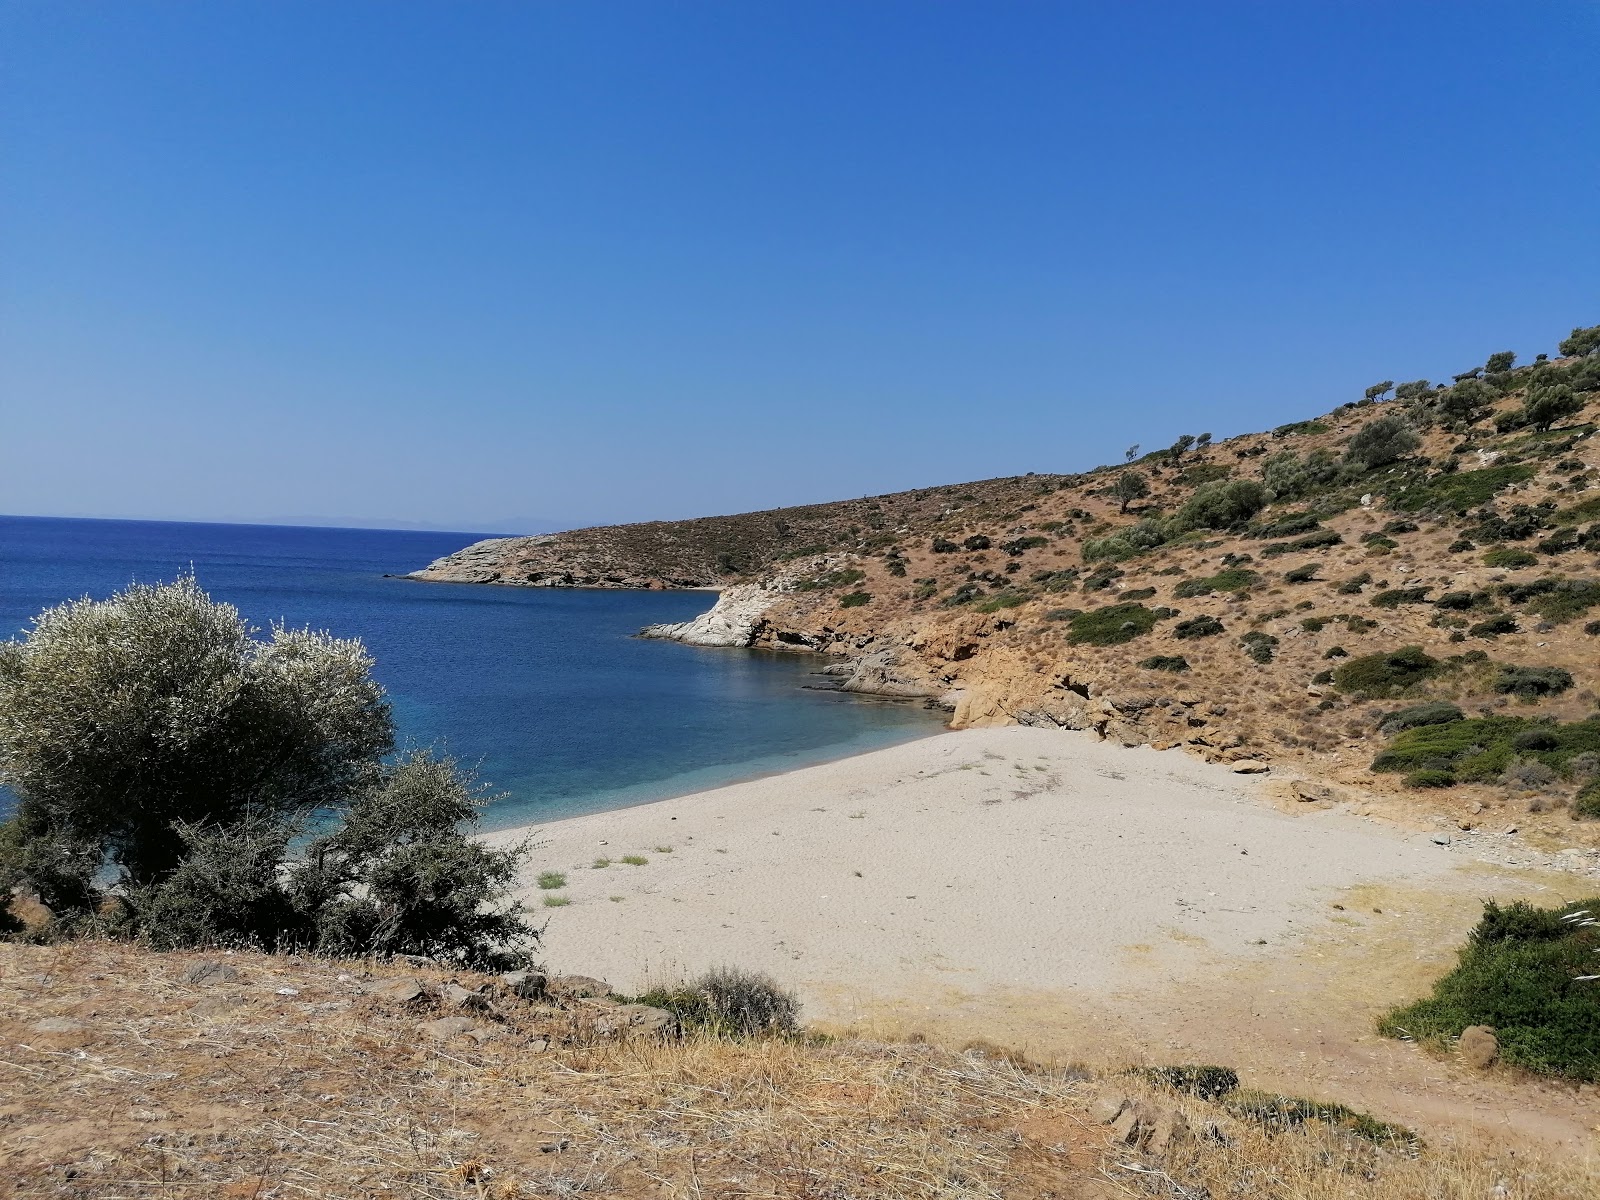 Erodios 3rd beach'in fotoğrafı parlak kum yüzey ile